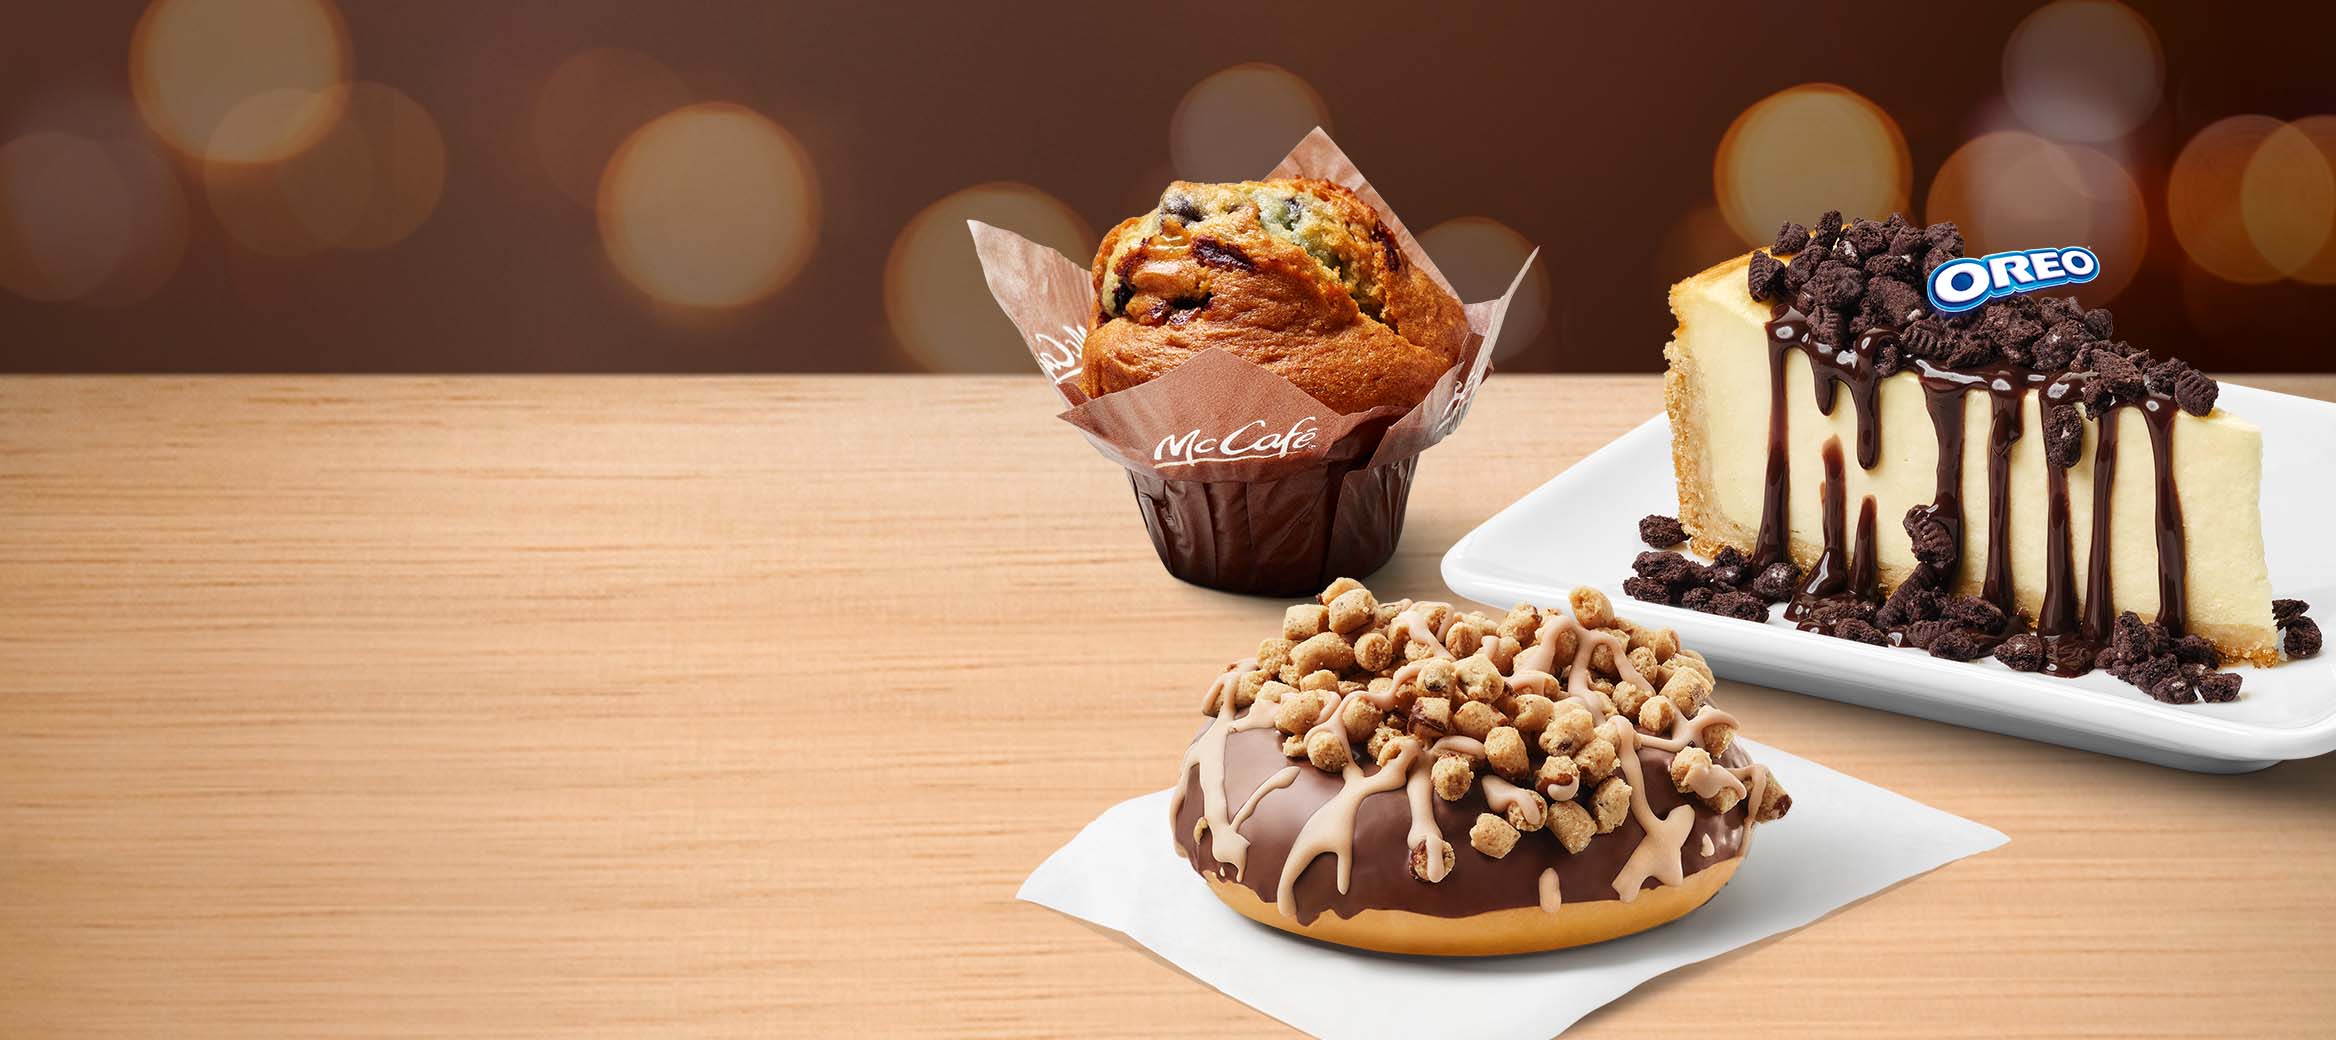 McCafé® Blaubeer Muffin, N.Y. Style Cheesecake mit OREO®-Topping und Schoko-Sauce und Cookie Dough Donut